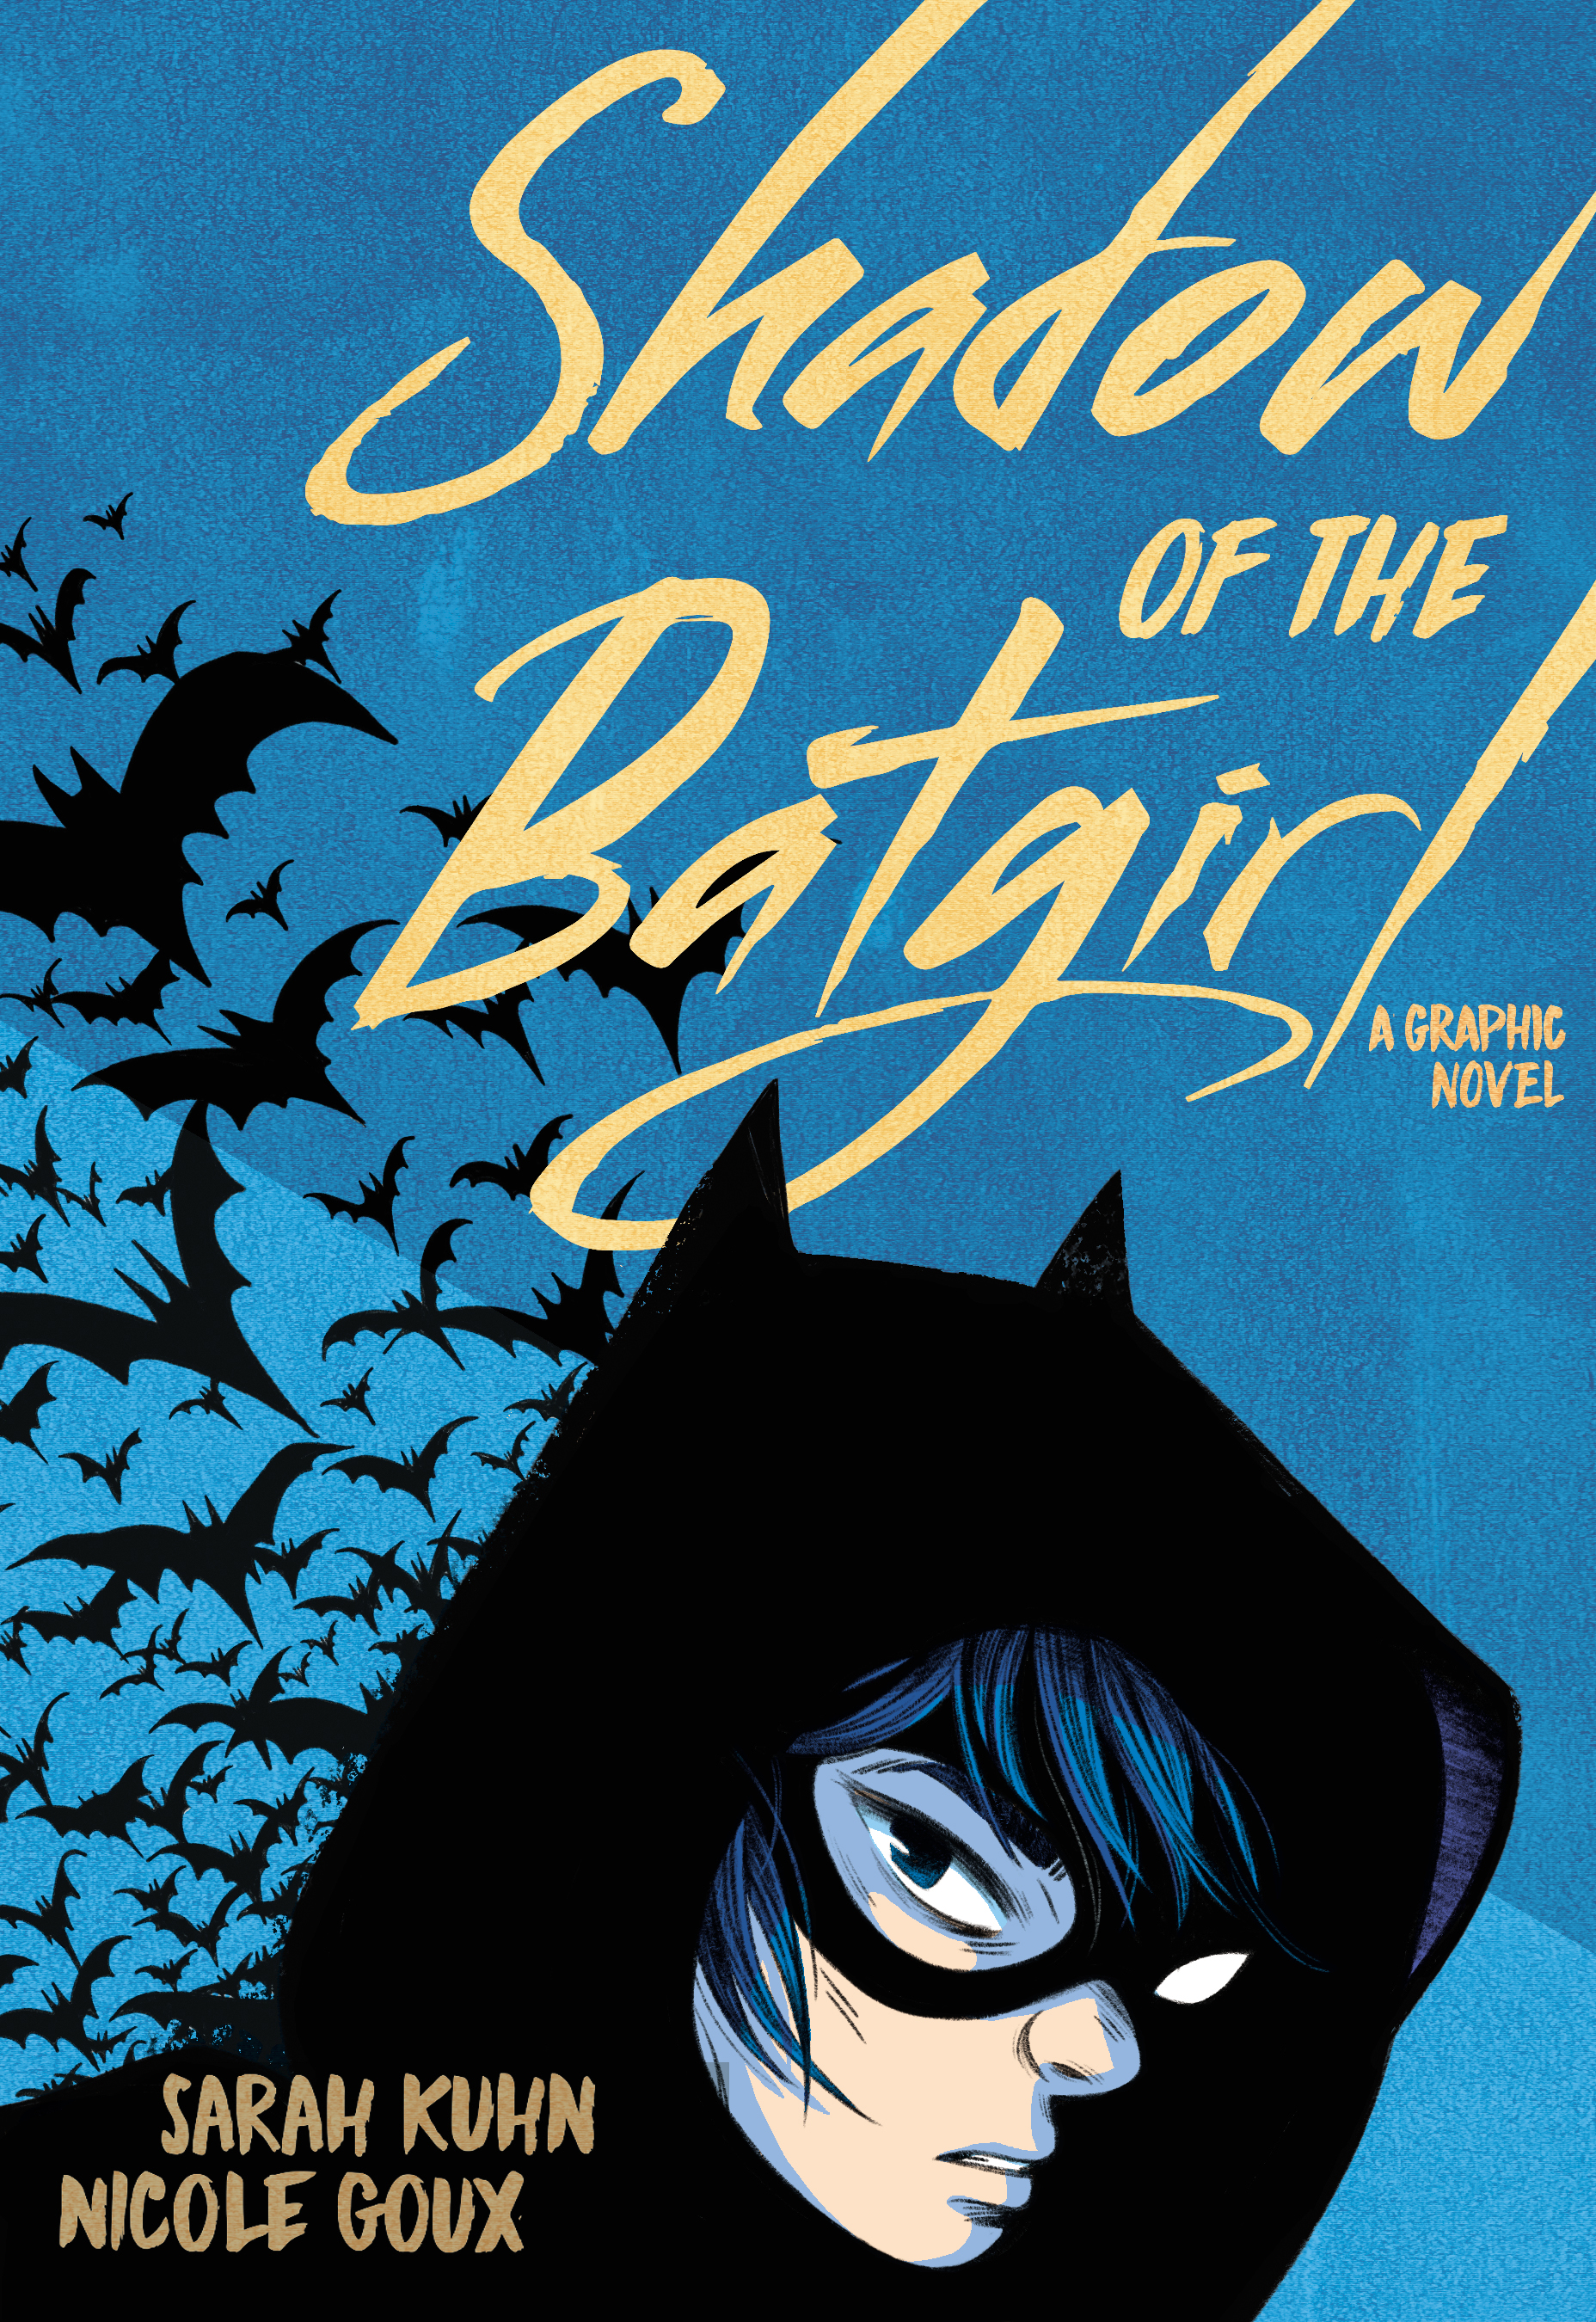 shadow of the batgirl